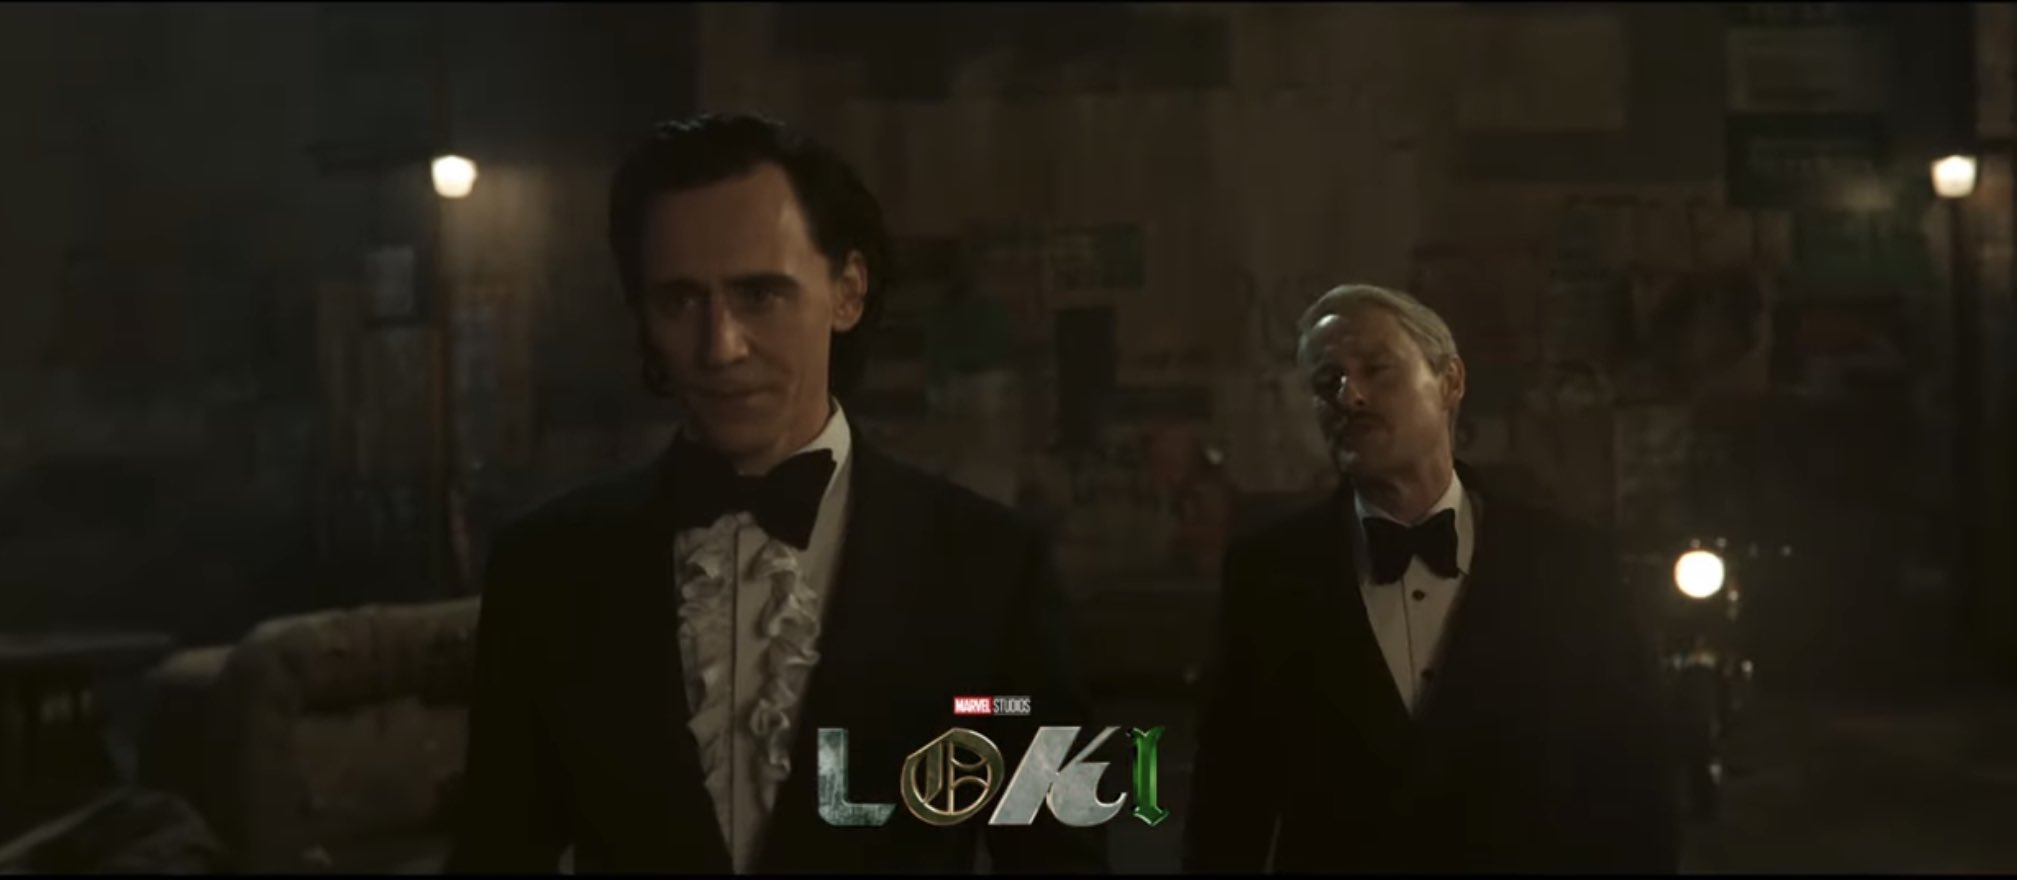 Novas imagens de "Loki" segunda temporada. (Foto: Reprodução/ Disney Plus